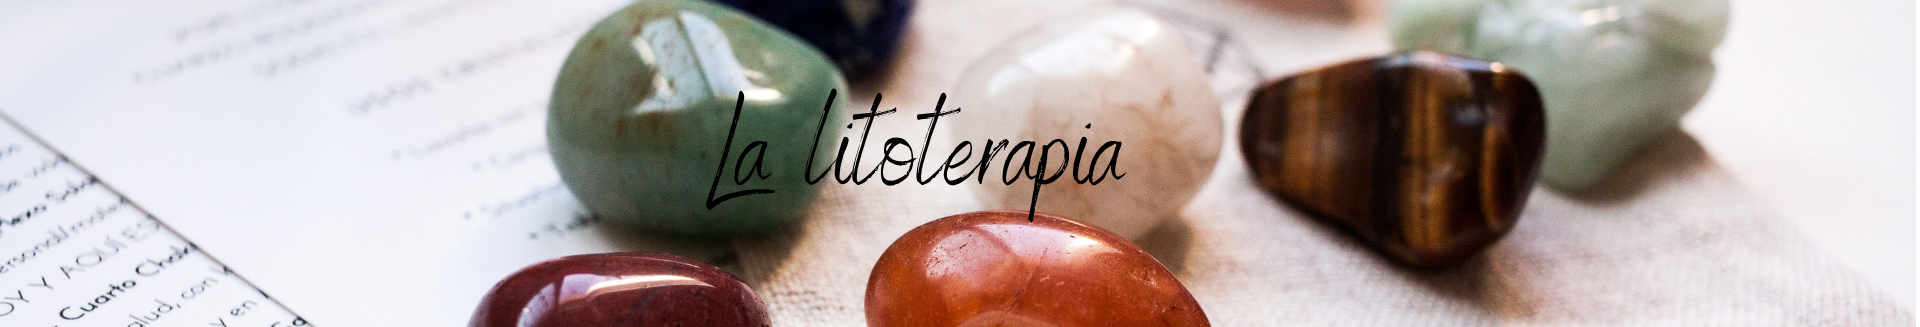 La litoterapia